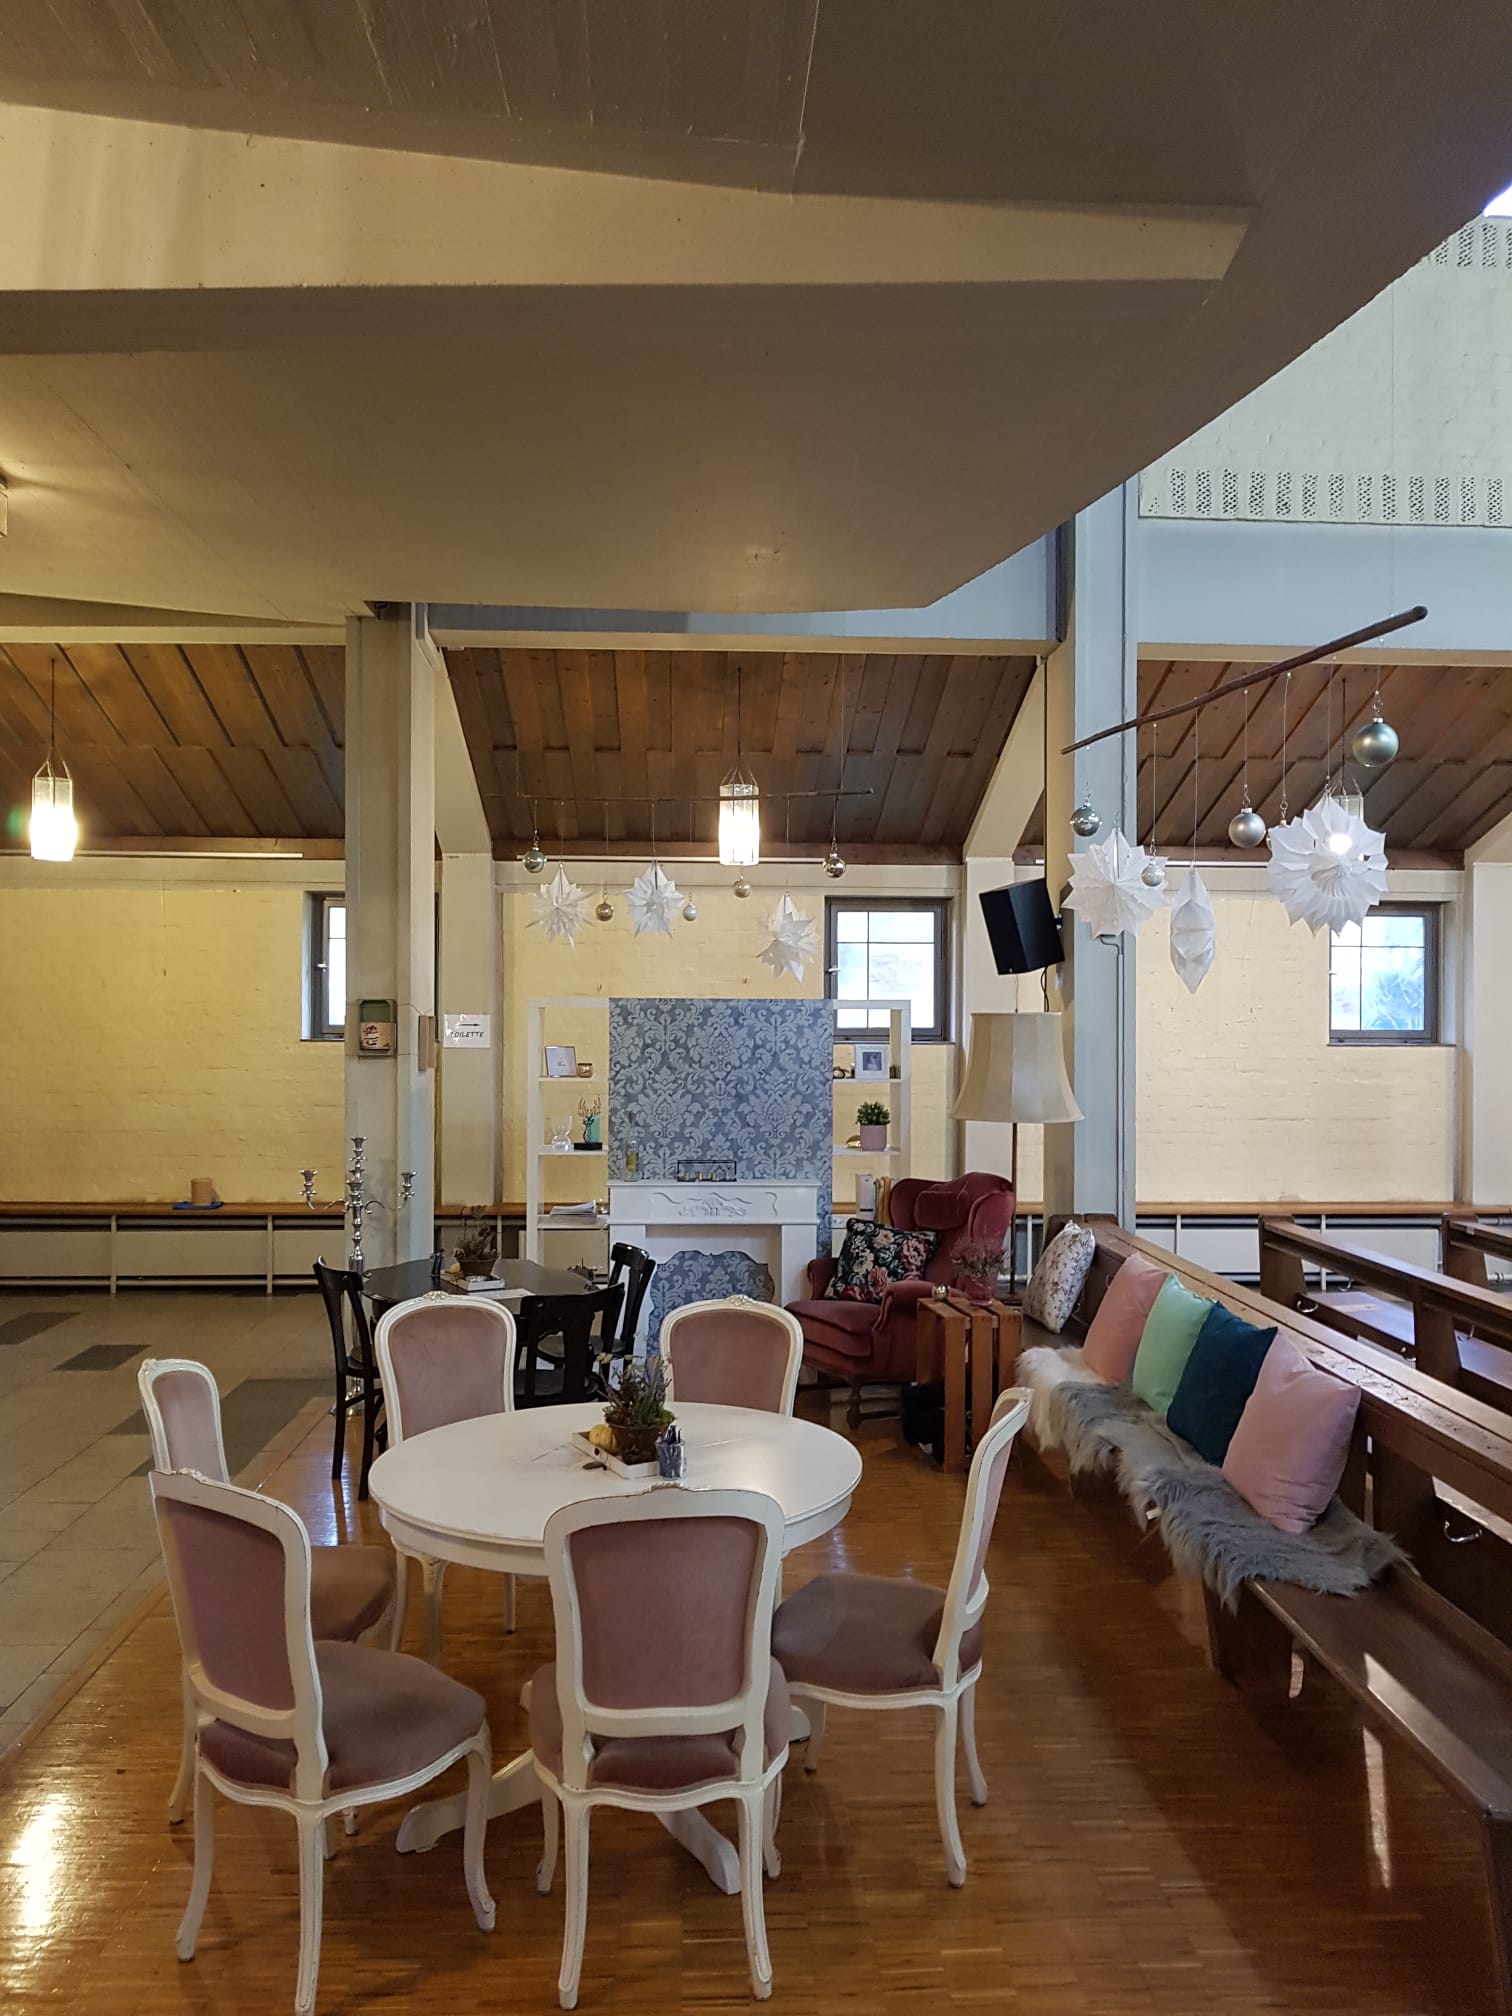 Cafémöbel in einer Kirche